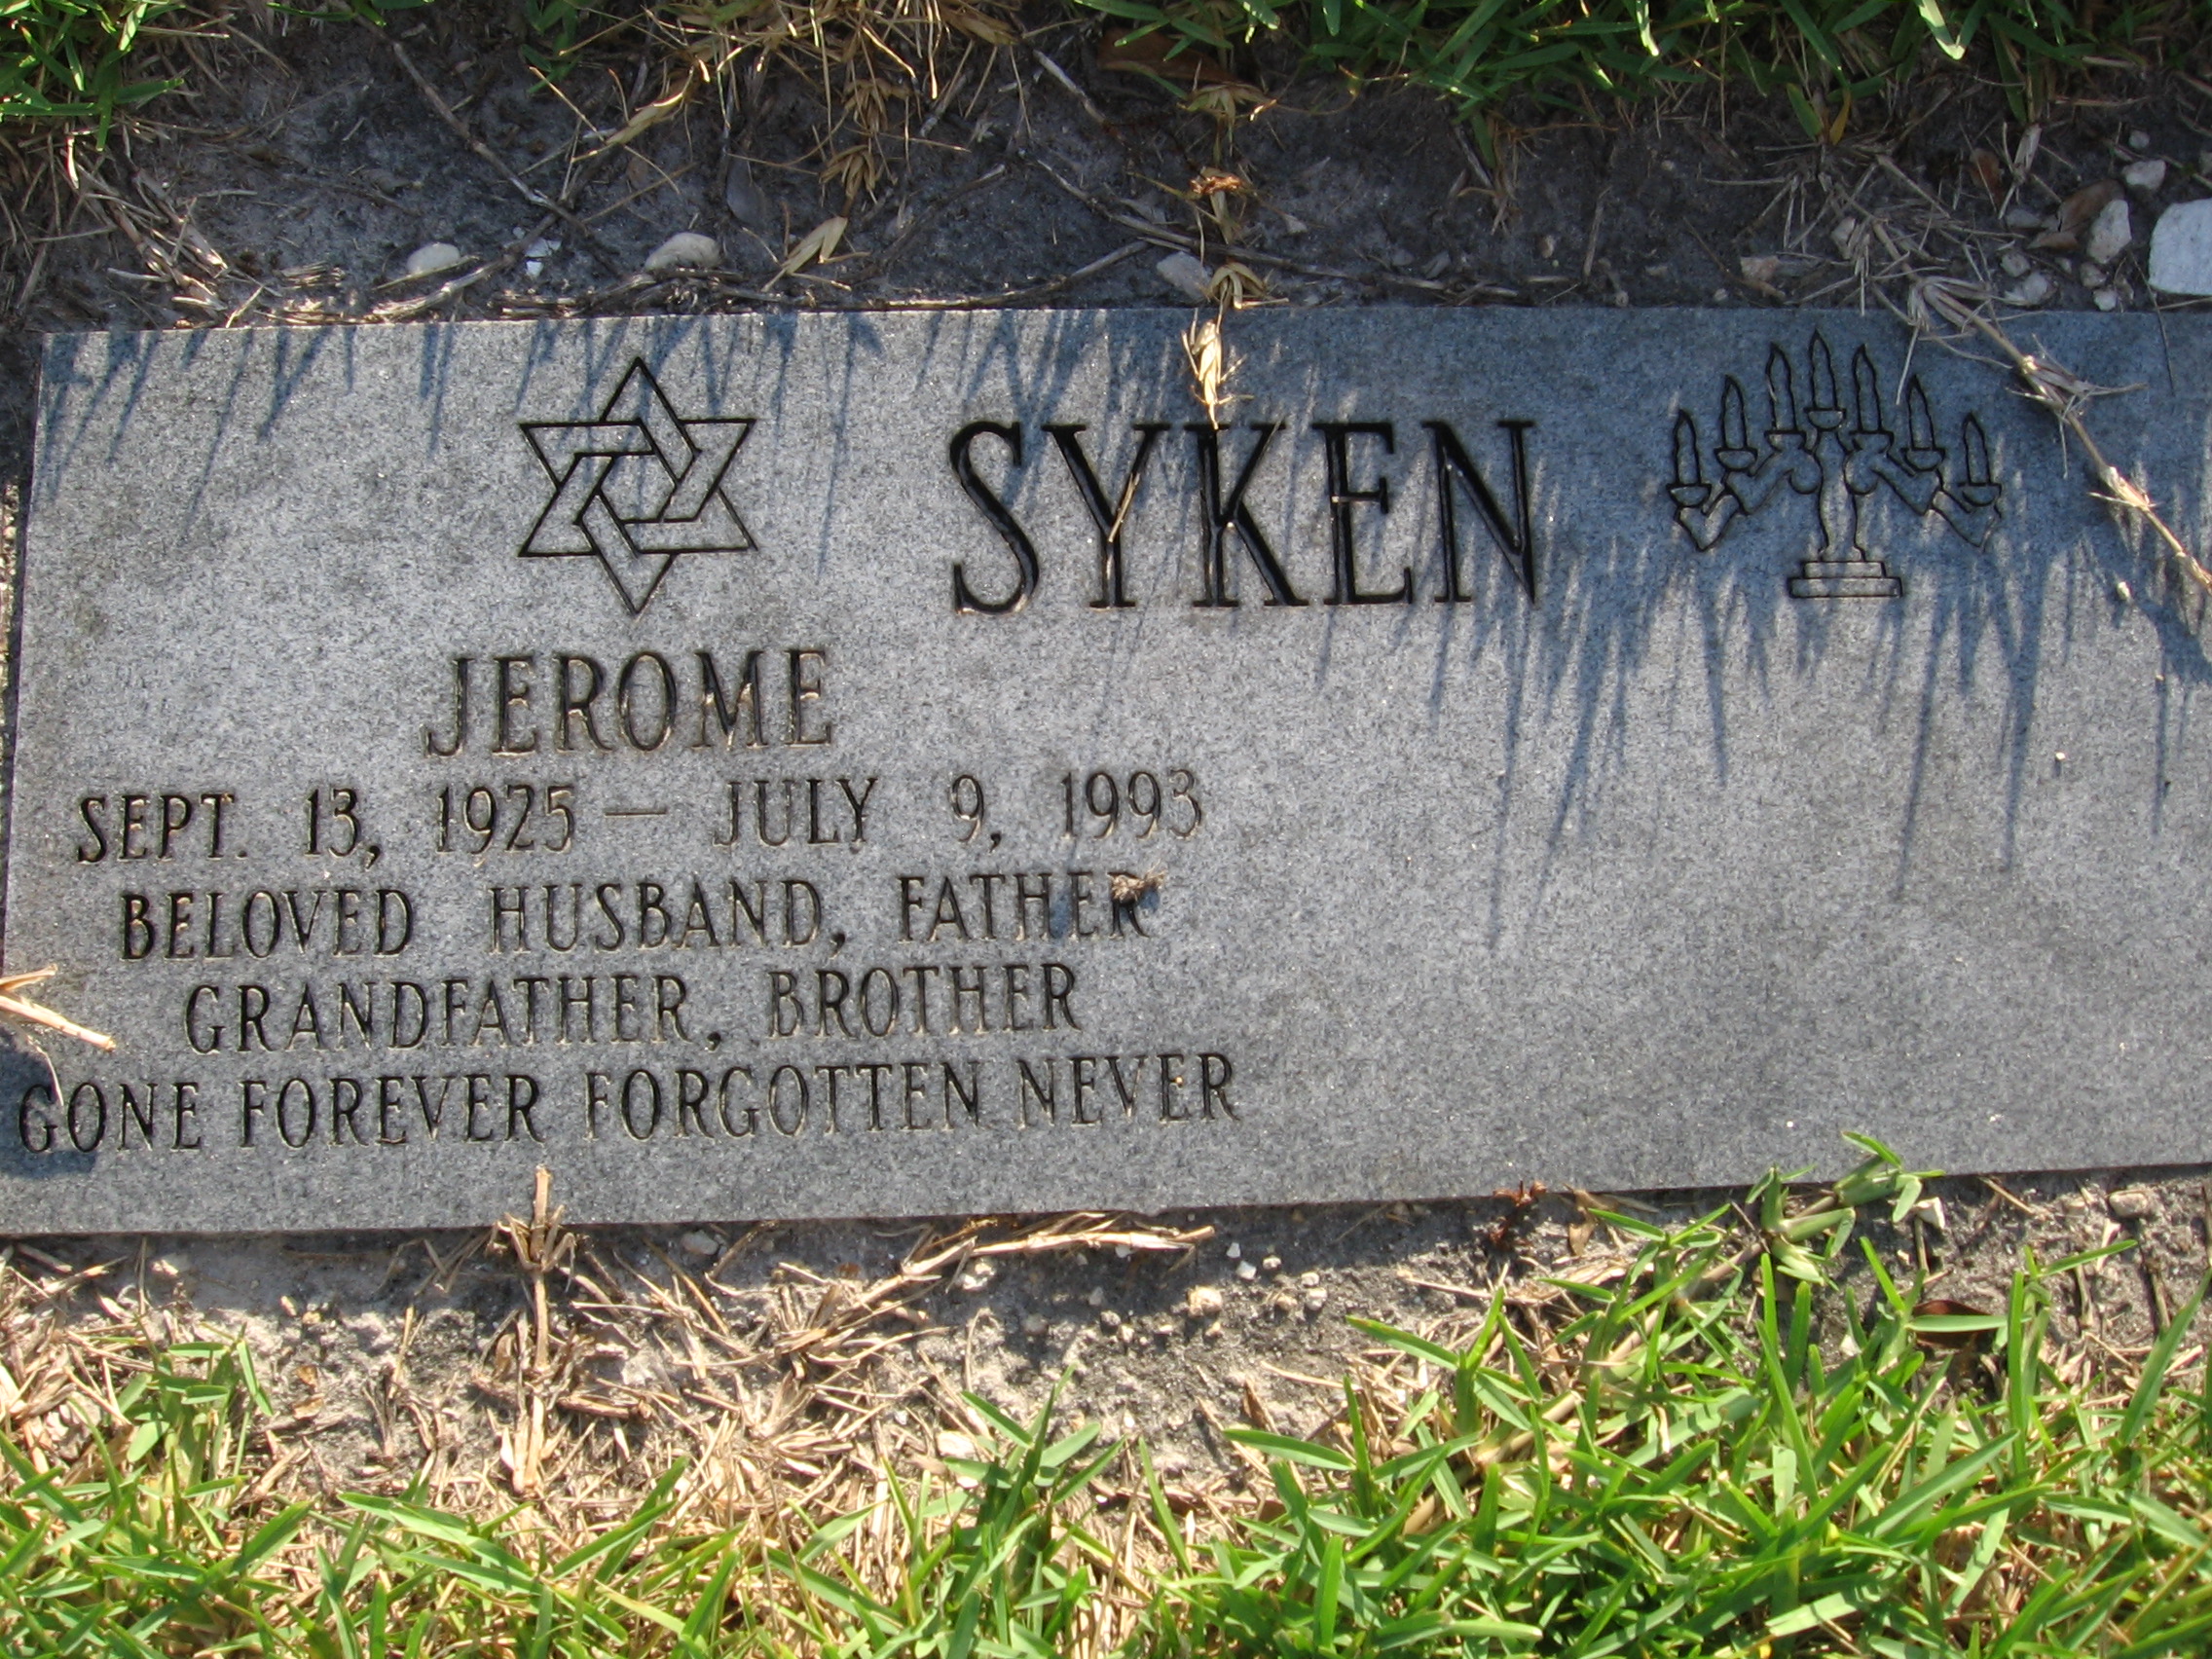 Jerome Syken